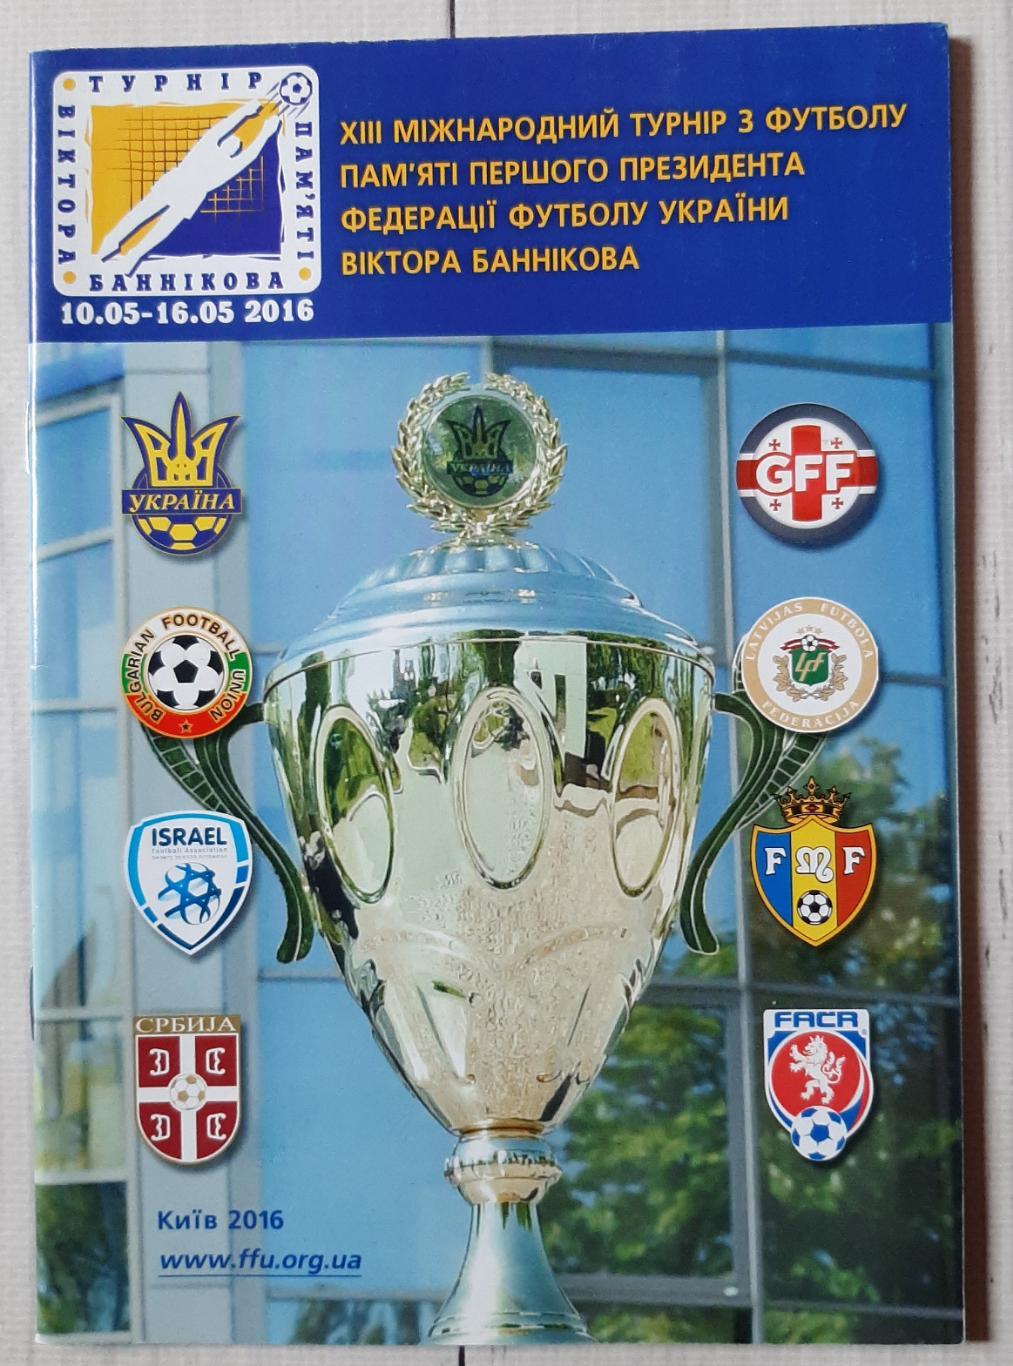 ХІІІ Міжнародний турнір пам'яті Віктора Баннікова 10-16.05.2016